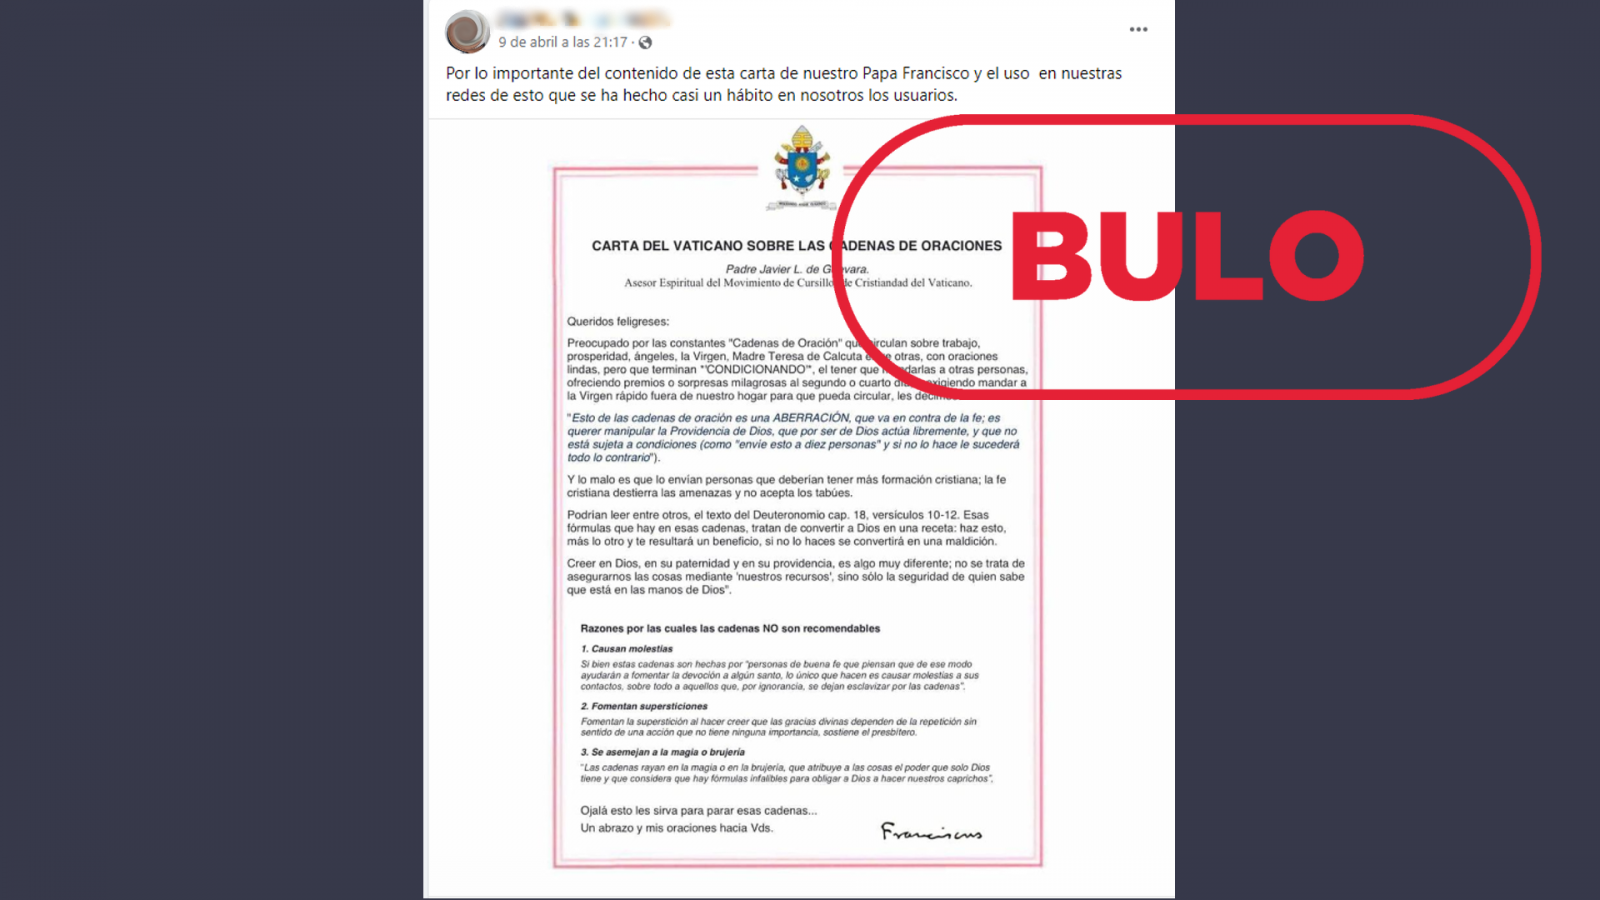 Mensaje de Facebook que difunde el bulo de la carta atribuida al Papa Francisco, con el sello 'Bulo' en rojo